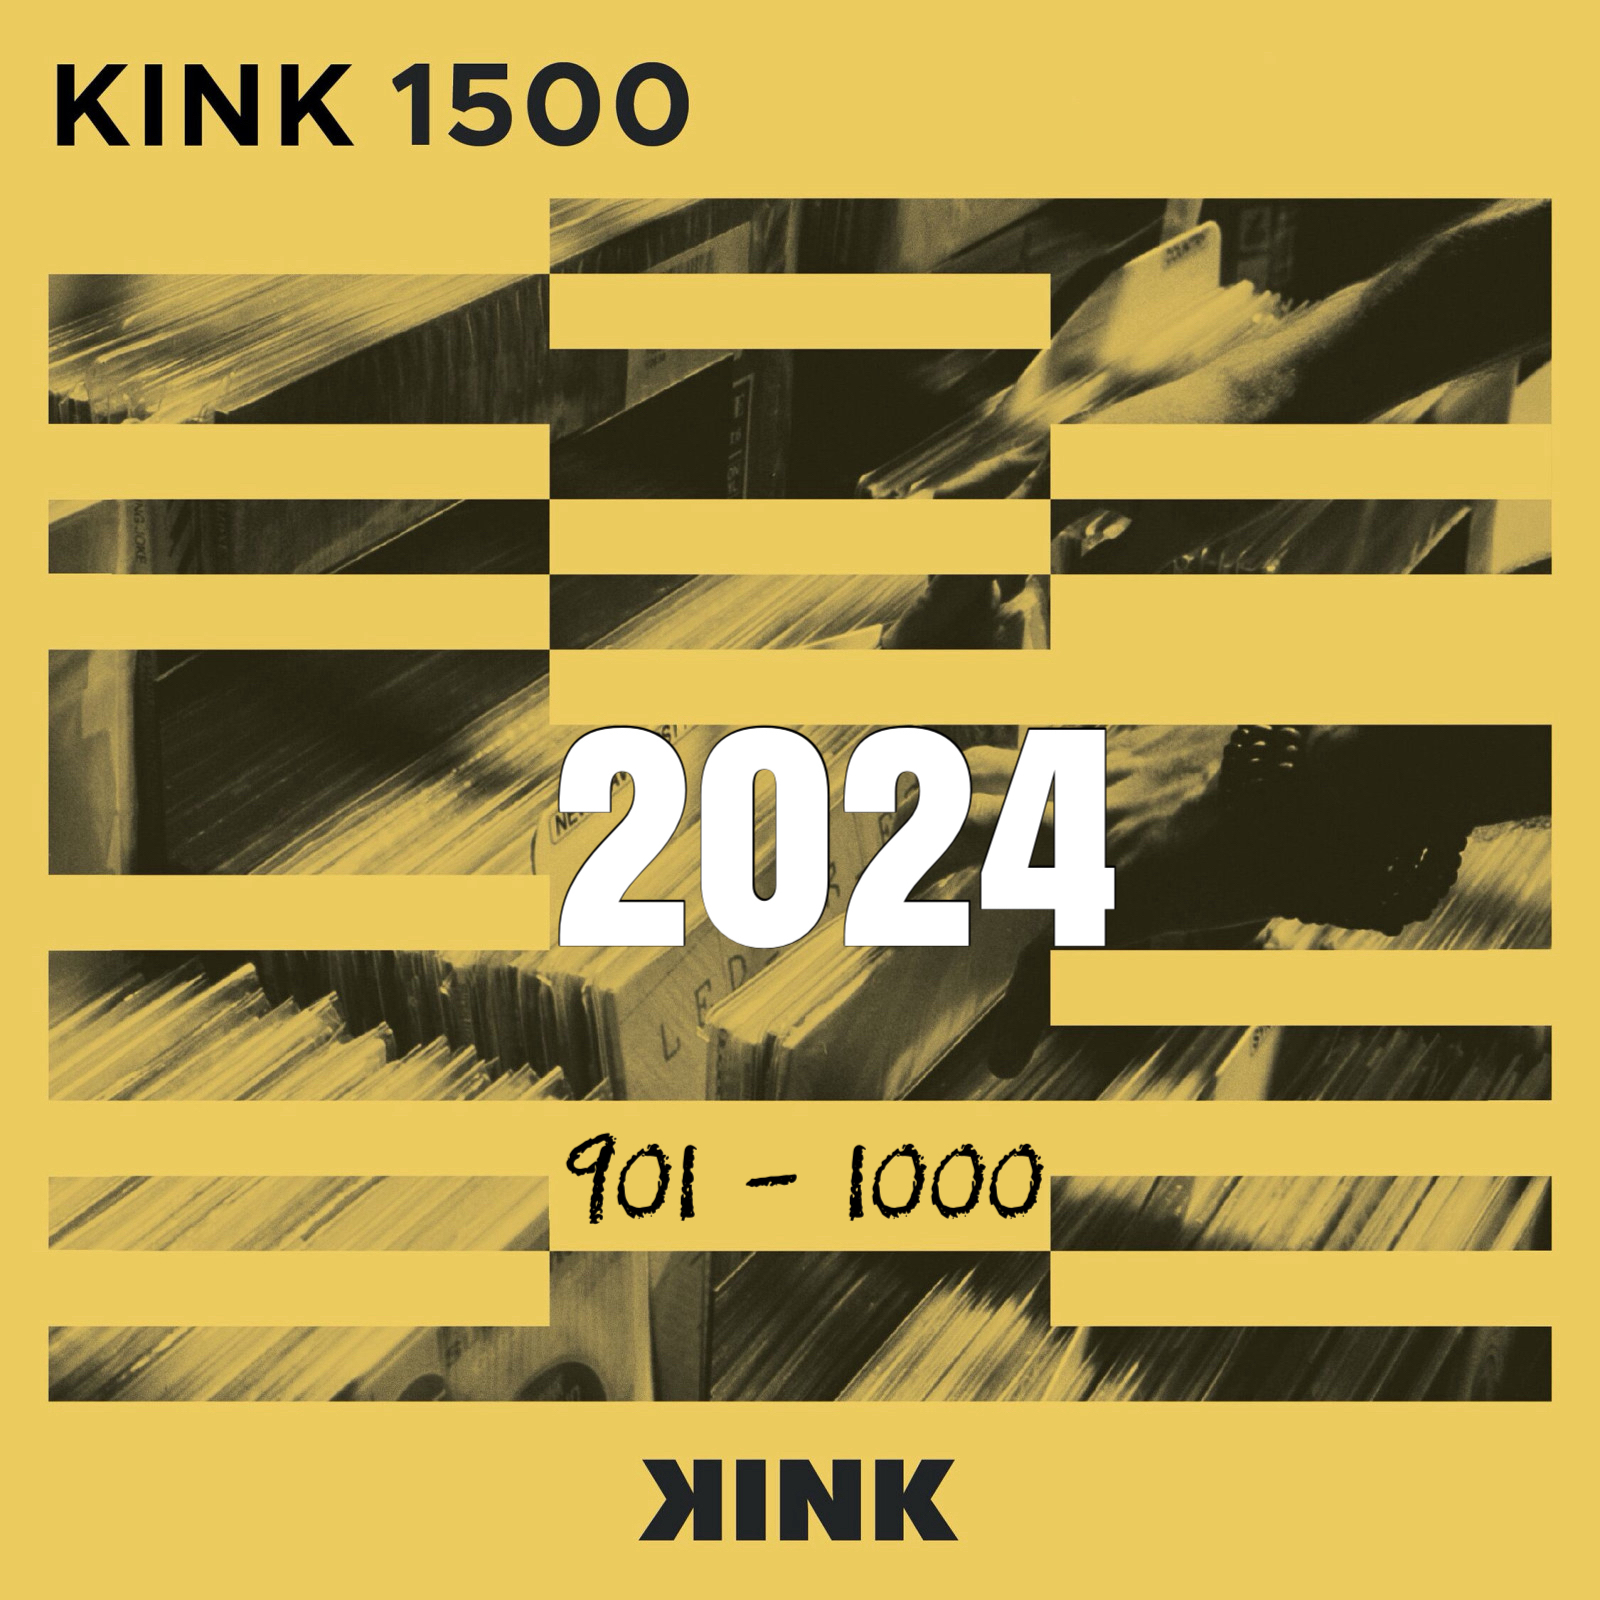 VA - Kink 1500 (2024) (0901- 1000)